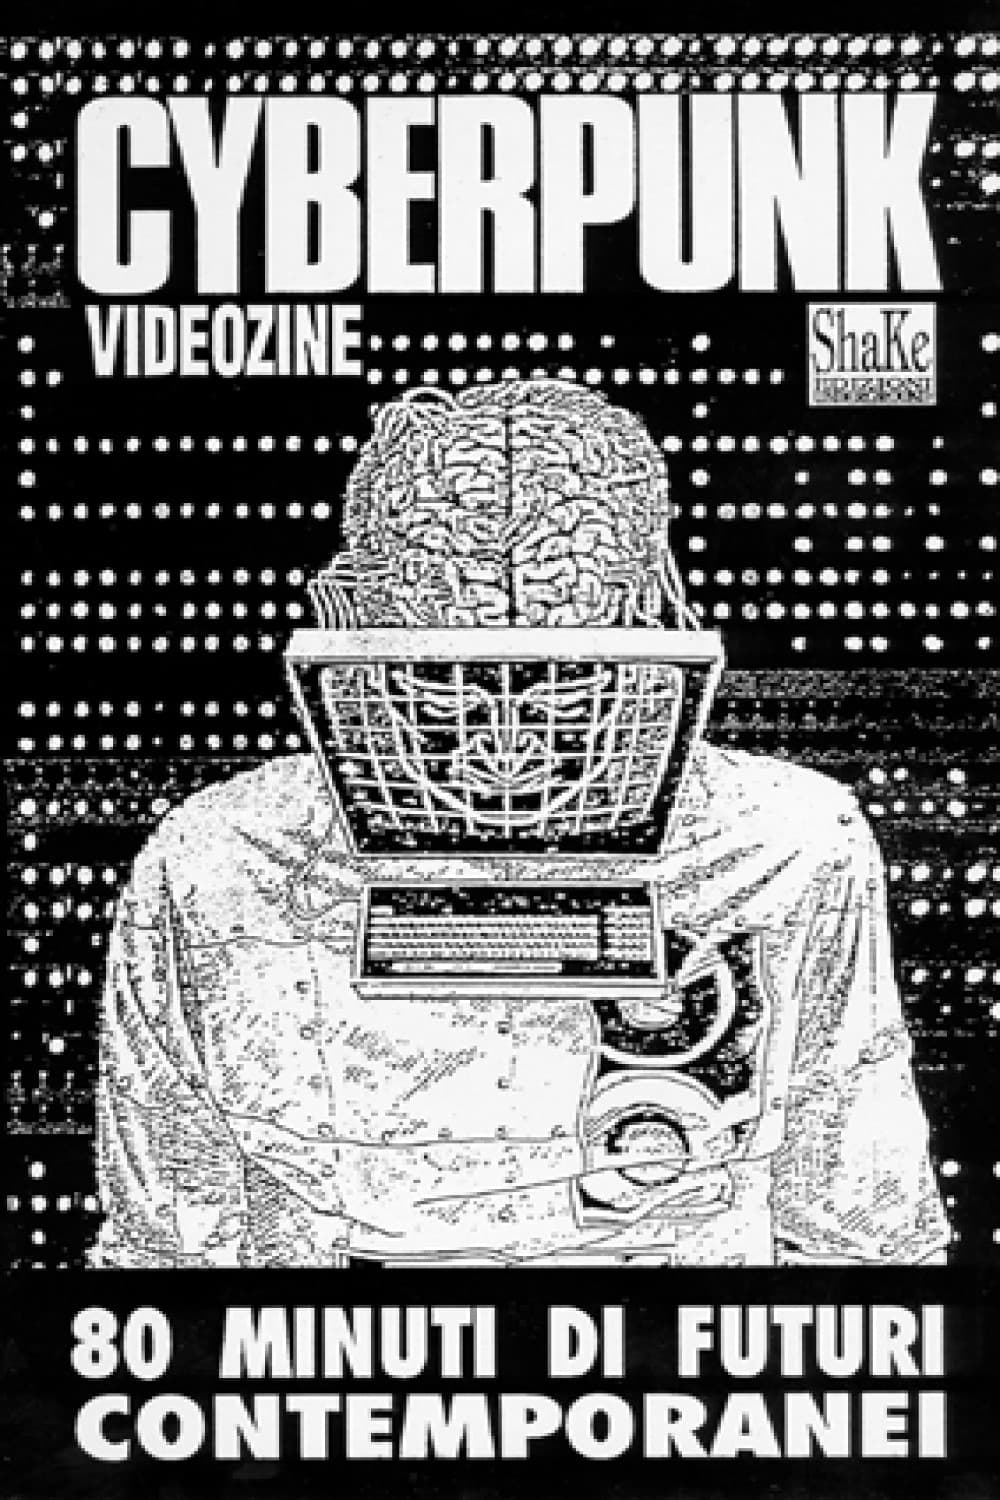 Cyberpunk Videozine 1